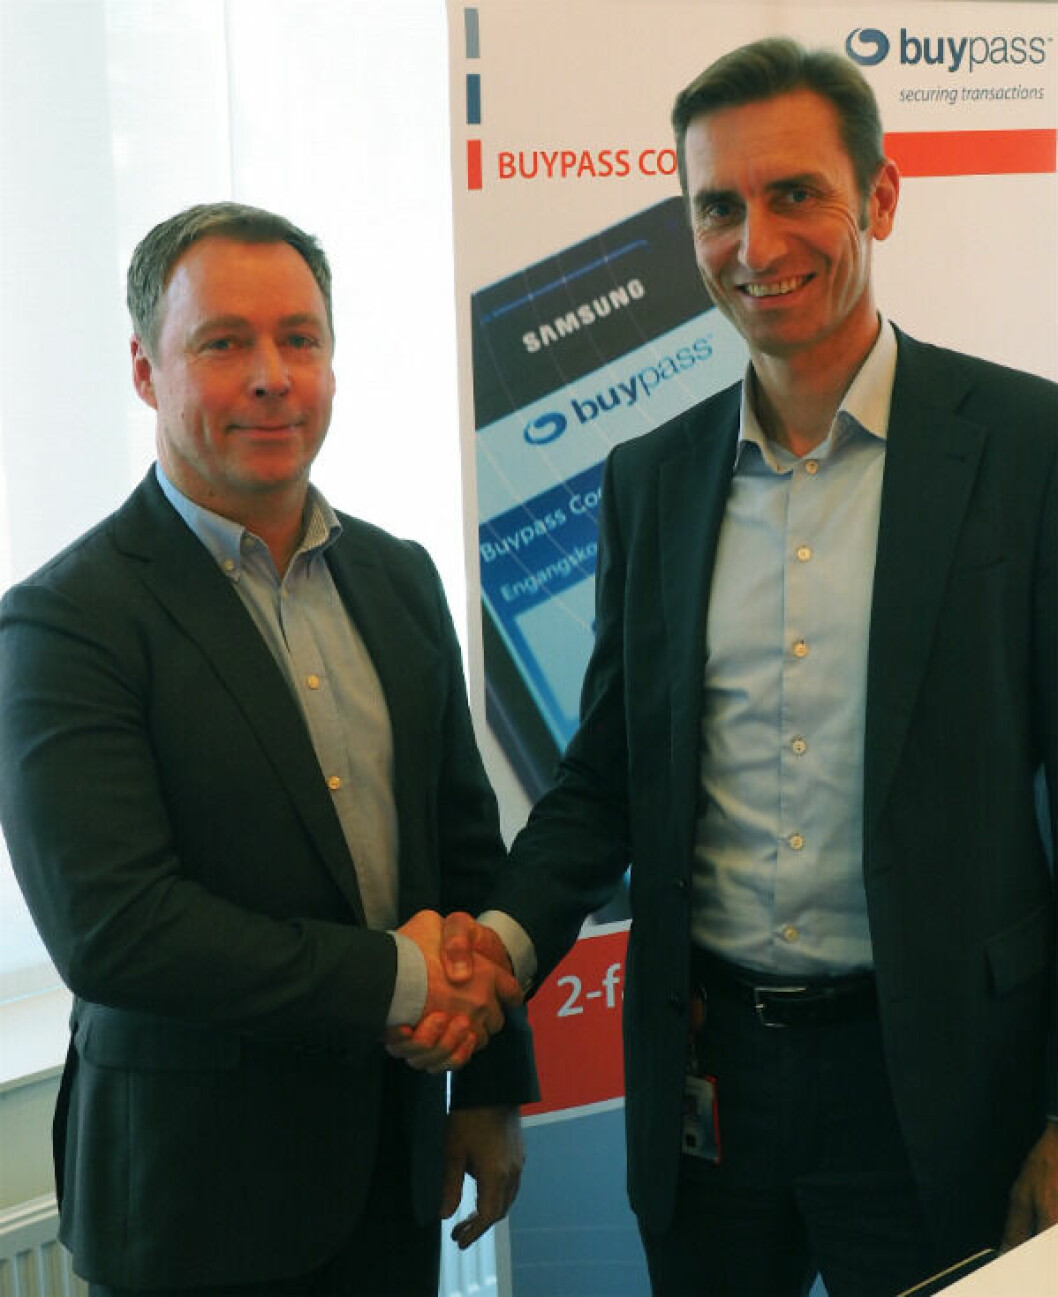 DISTRIBUSJONSAVTALE: Commax-direktør Geir-Rune Dyrseth og Gunnar Lindstøl, administrerende direktør i Buypass inngår avtale om nordisk distribusjon av autentiserings-løsningen Buypass Code. (Pressefoto)